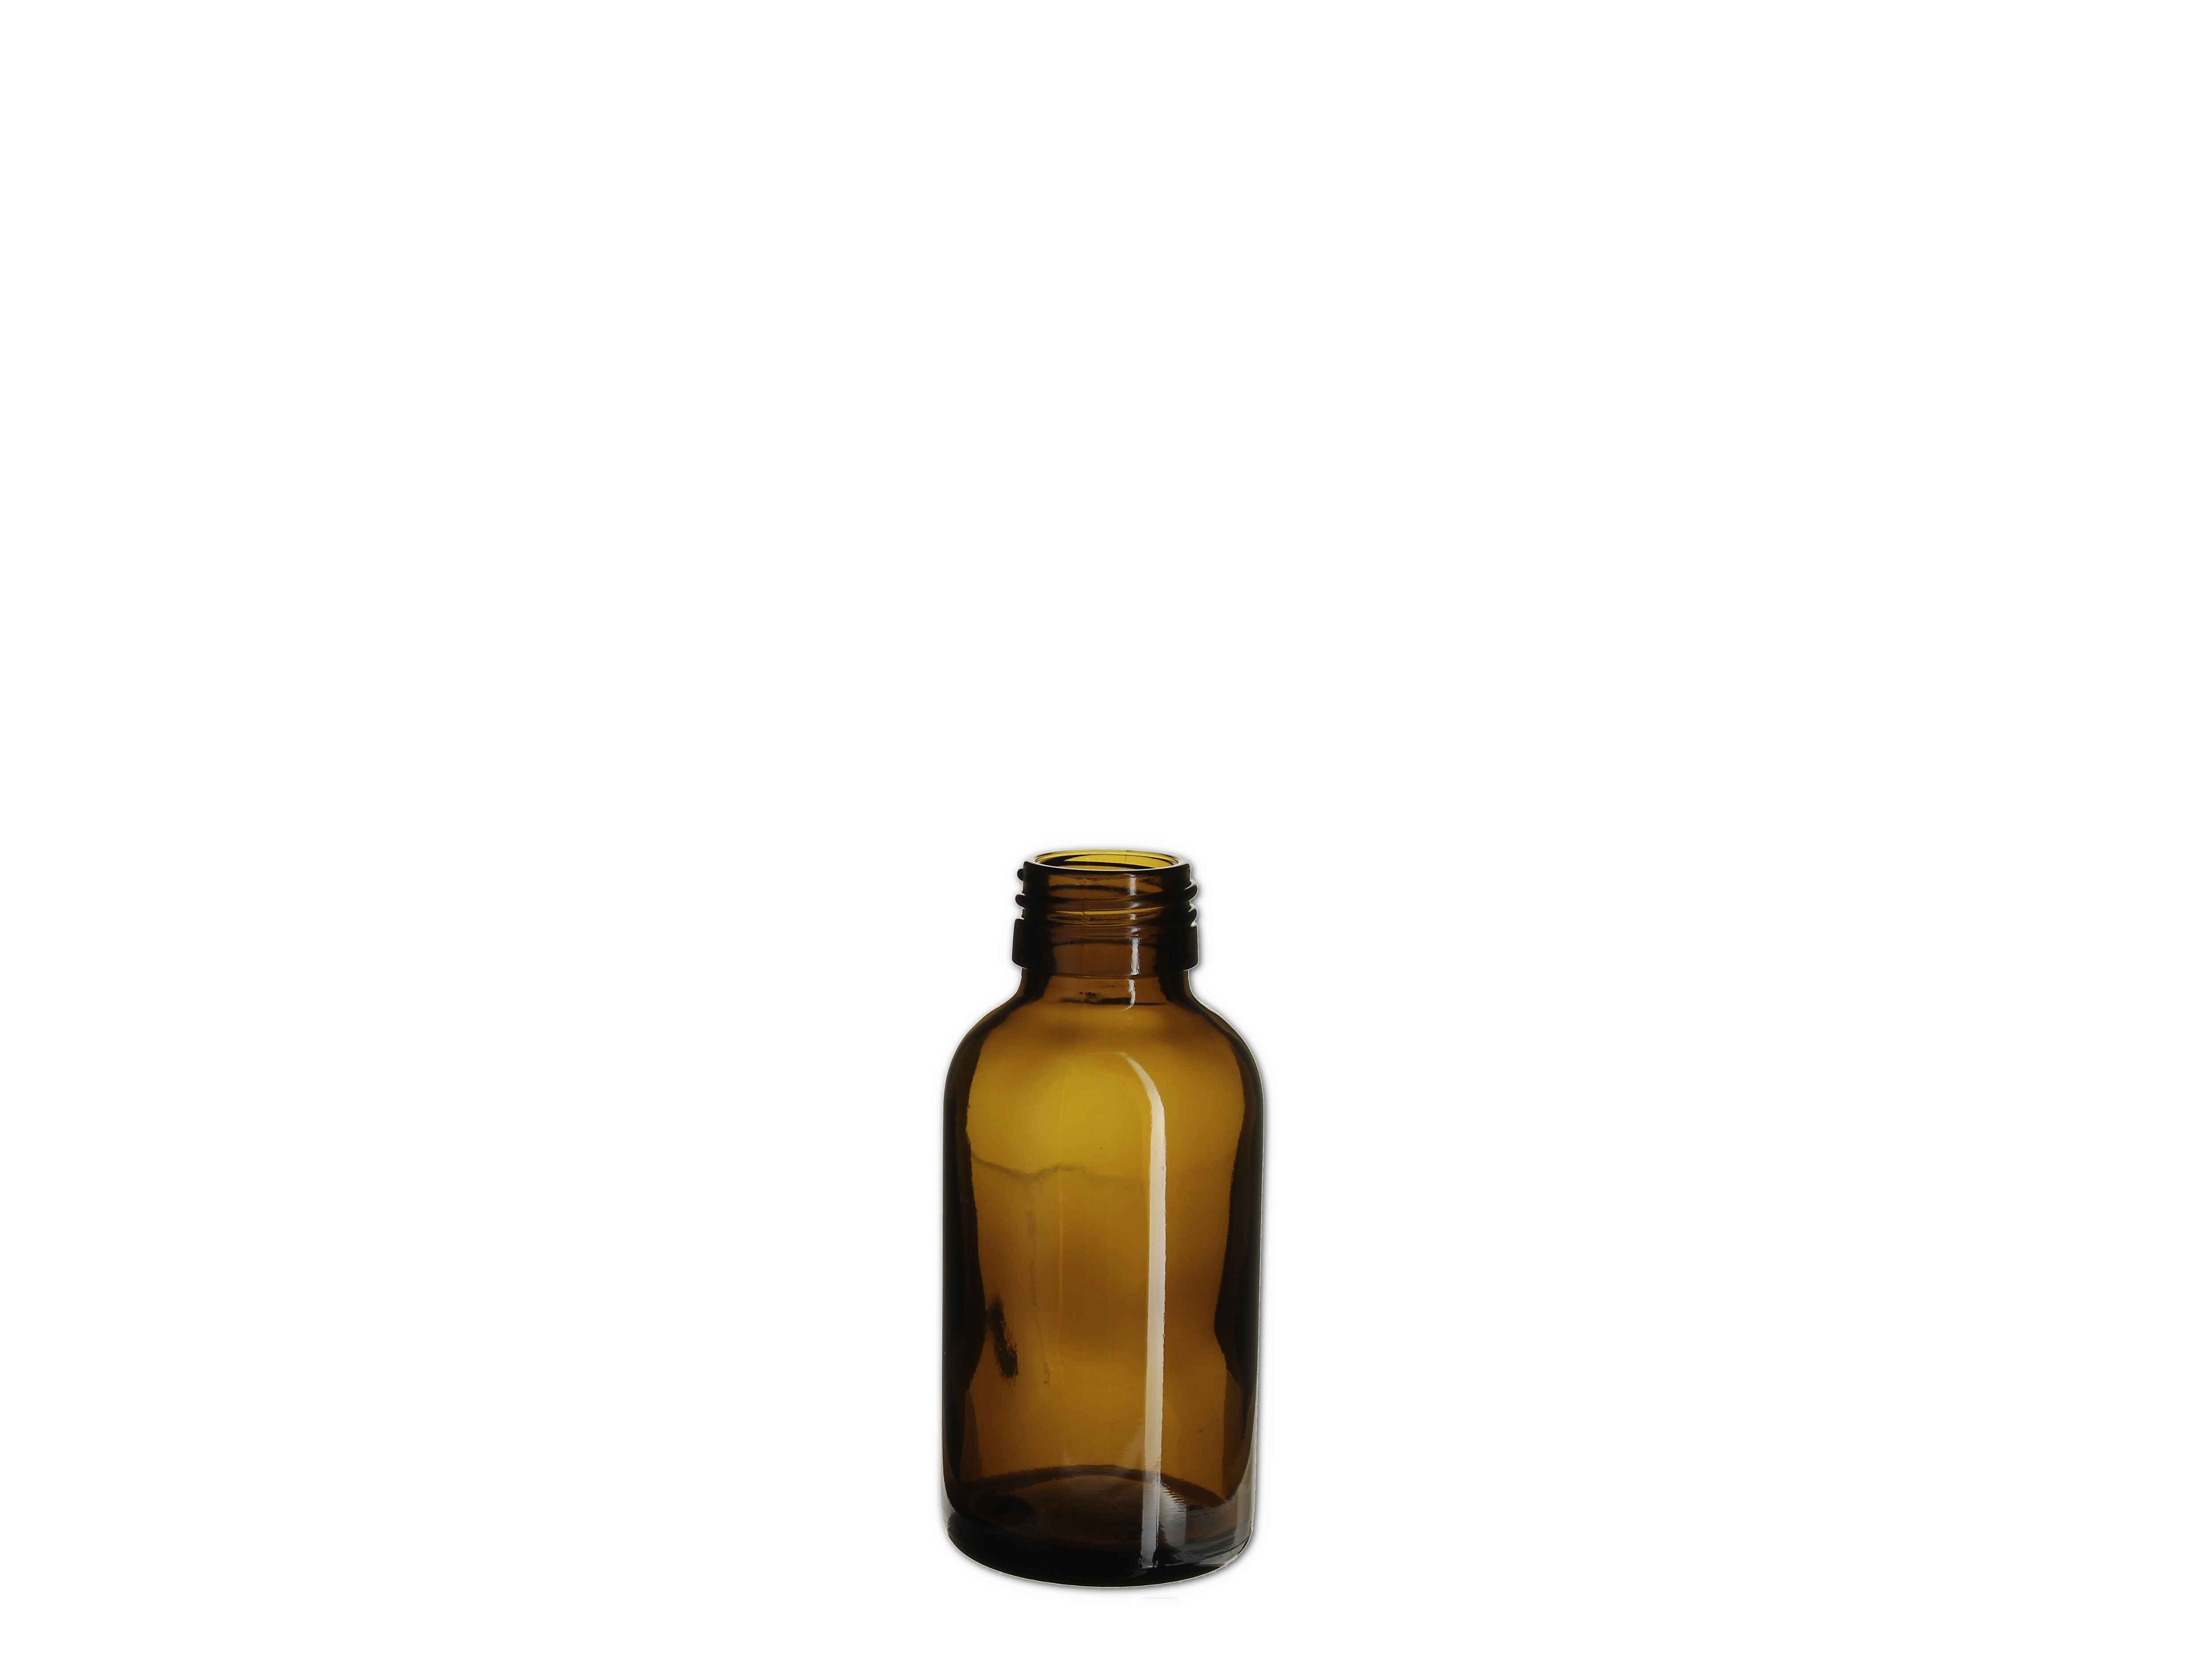    Medizin Flasche braun - PP28 - 100ml